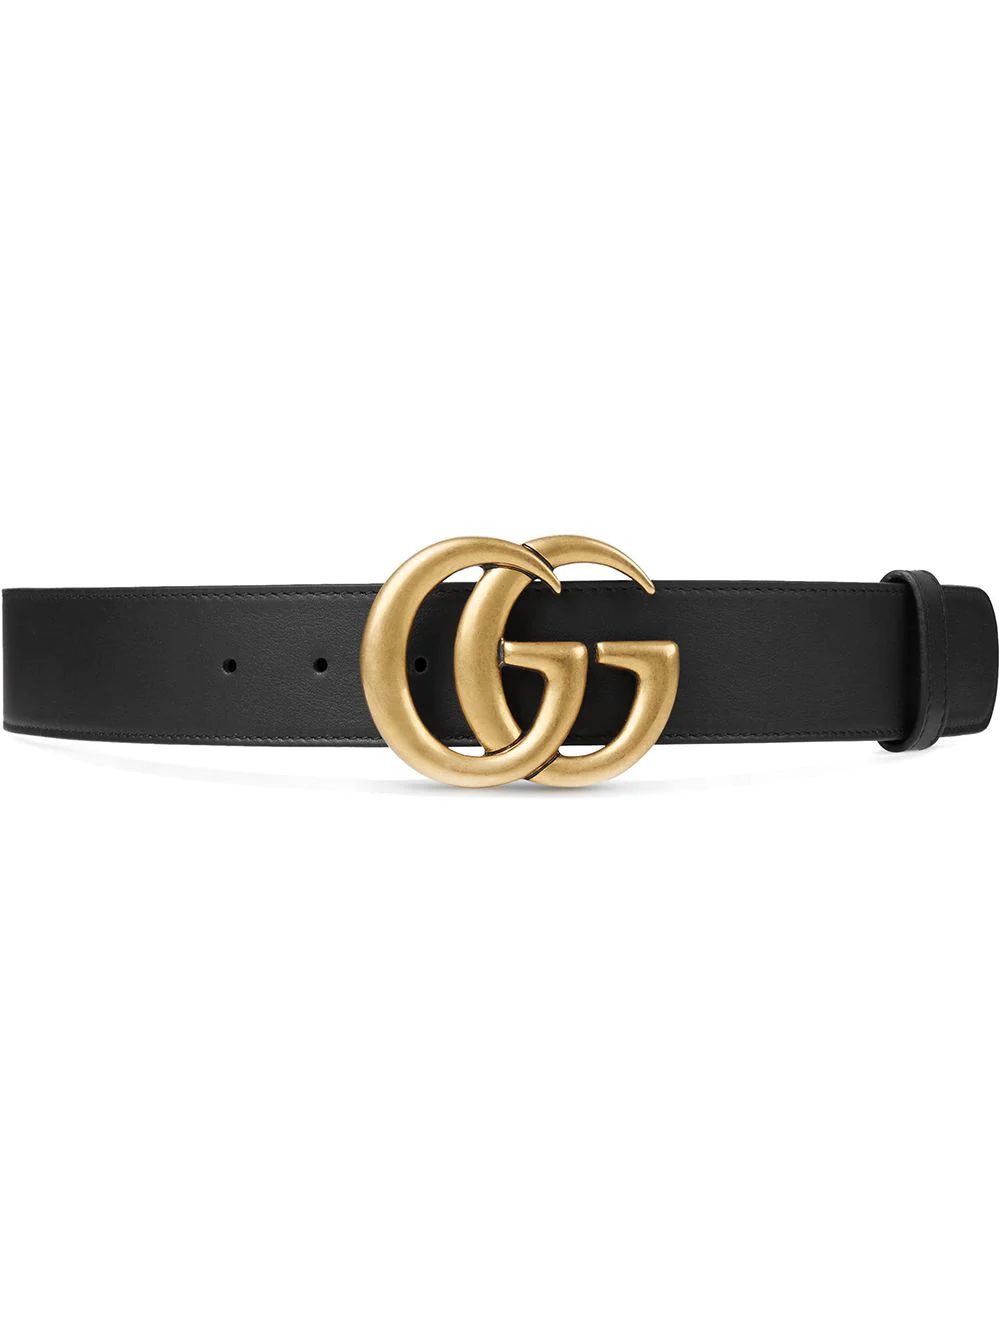 Double G buckle belt | Farfetch Global